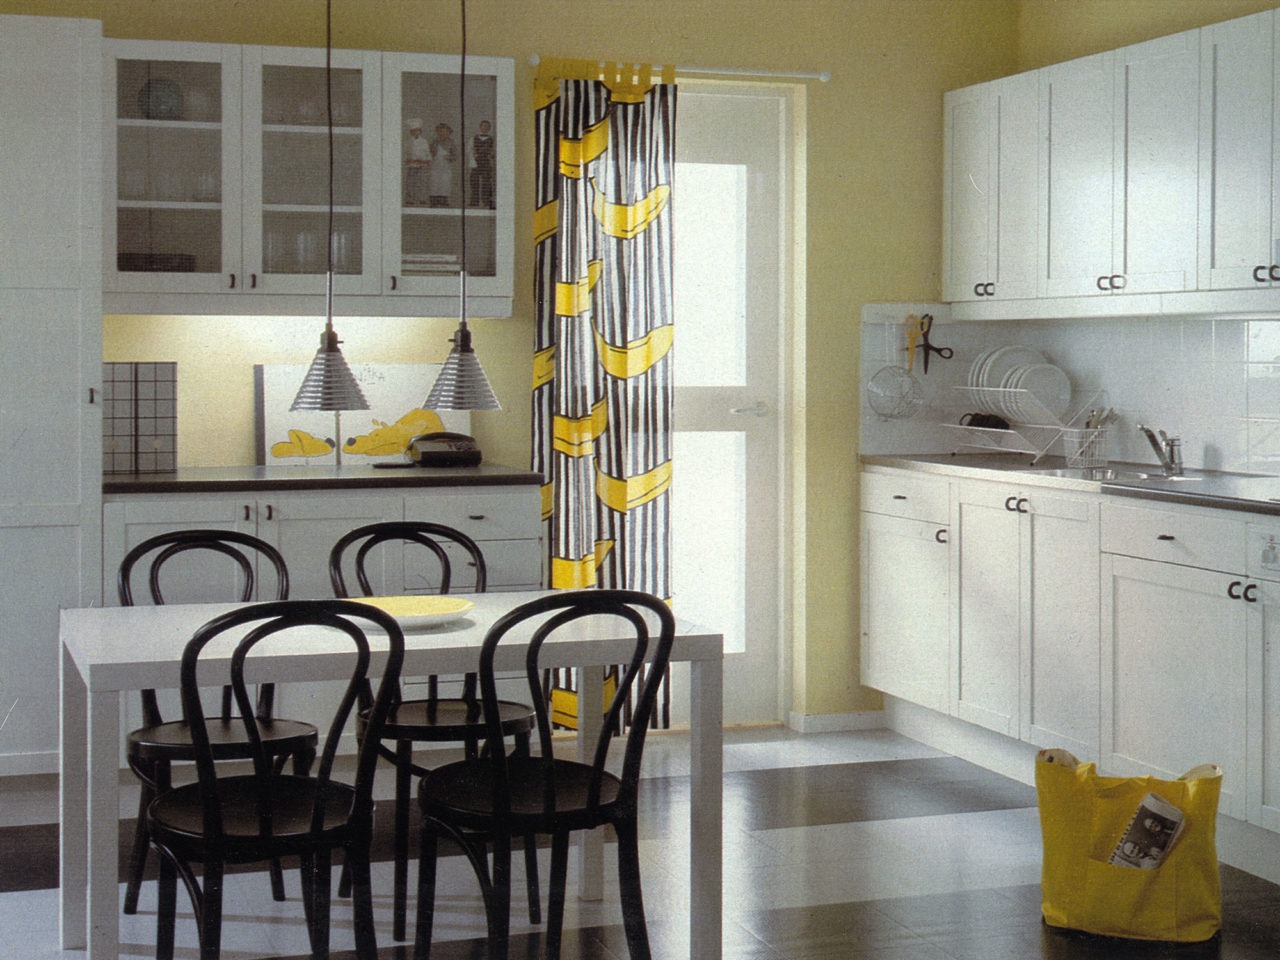 Ett kök i vitt förutom pinnstolar vid ett matbord och detaljer i svart, samt en gardin med bananmönster vid köksingången.